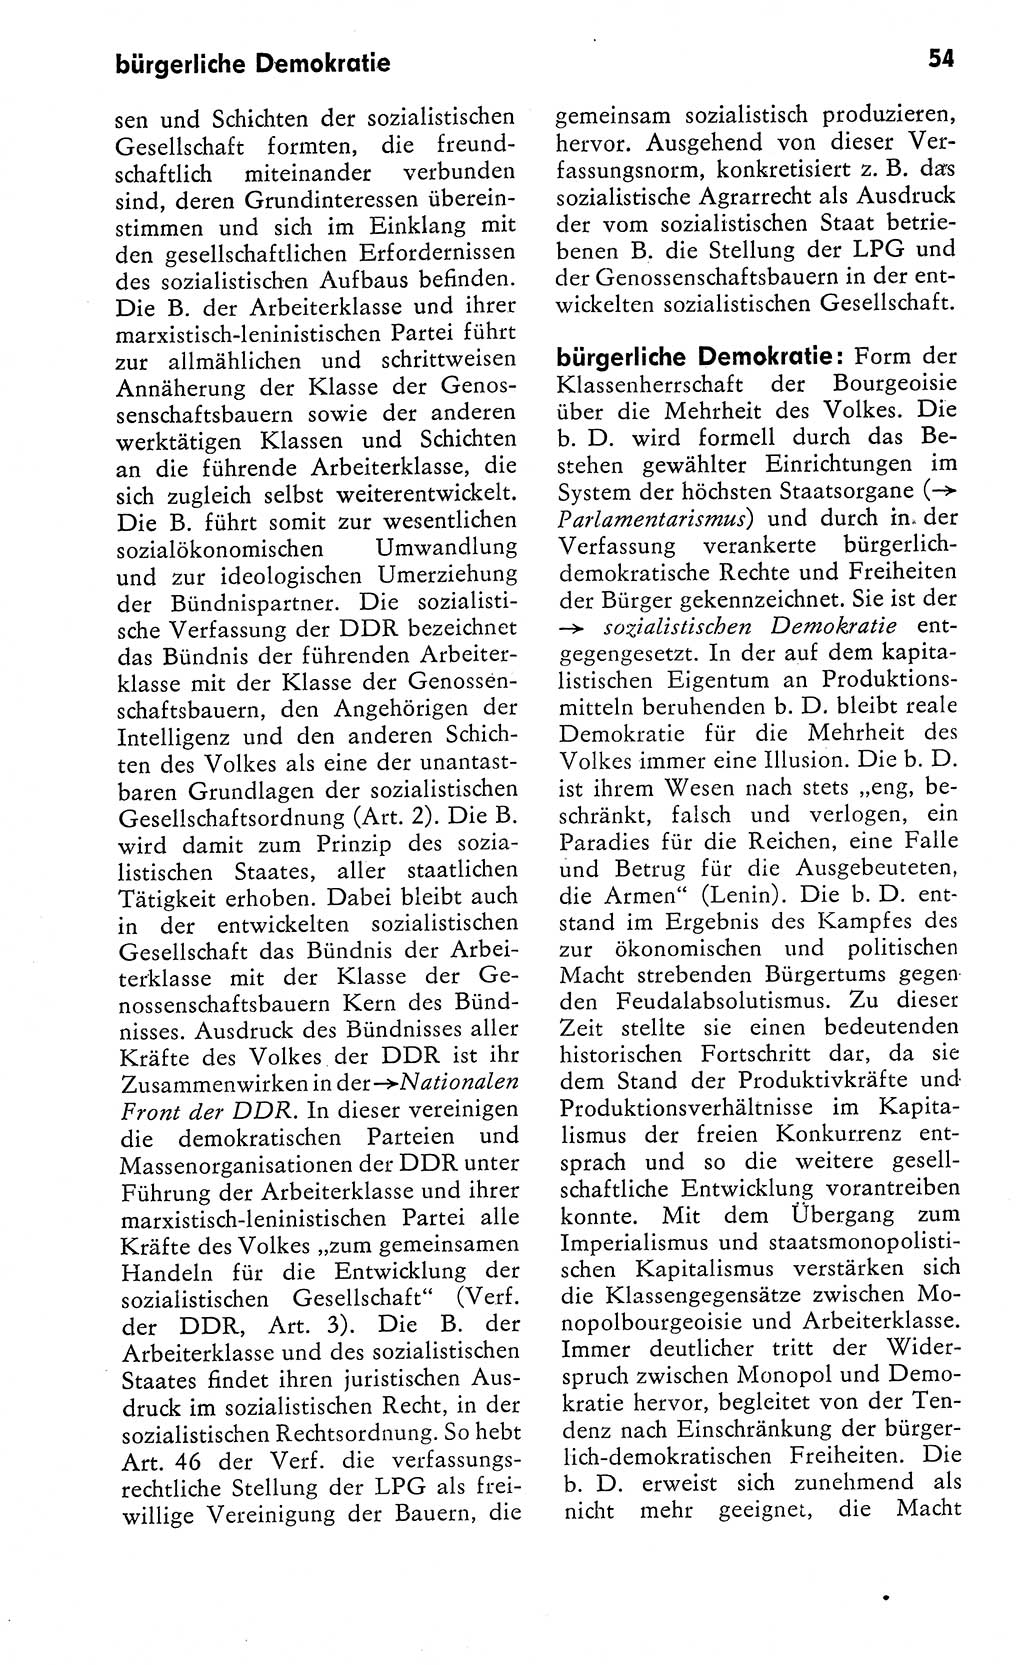 Wörterbuch zum sozialistischen Staat [Deutsche Demokratische Republik (DDR)] 1974, Seite 54 (Wb. soz. St. DDR 1974, S. 54)